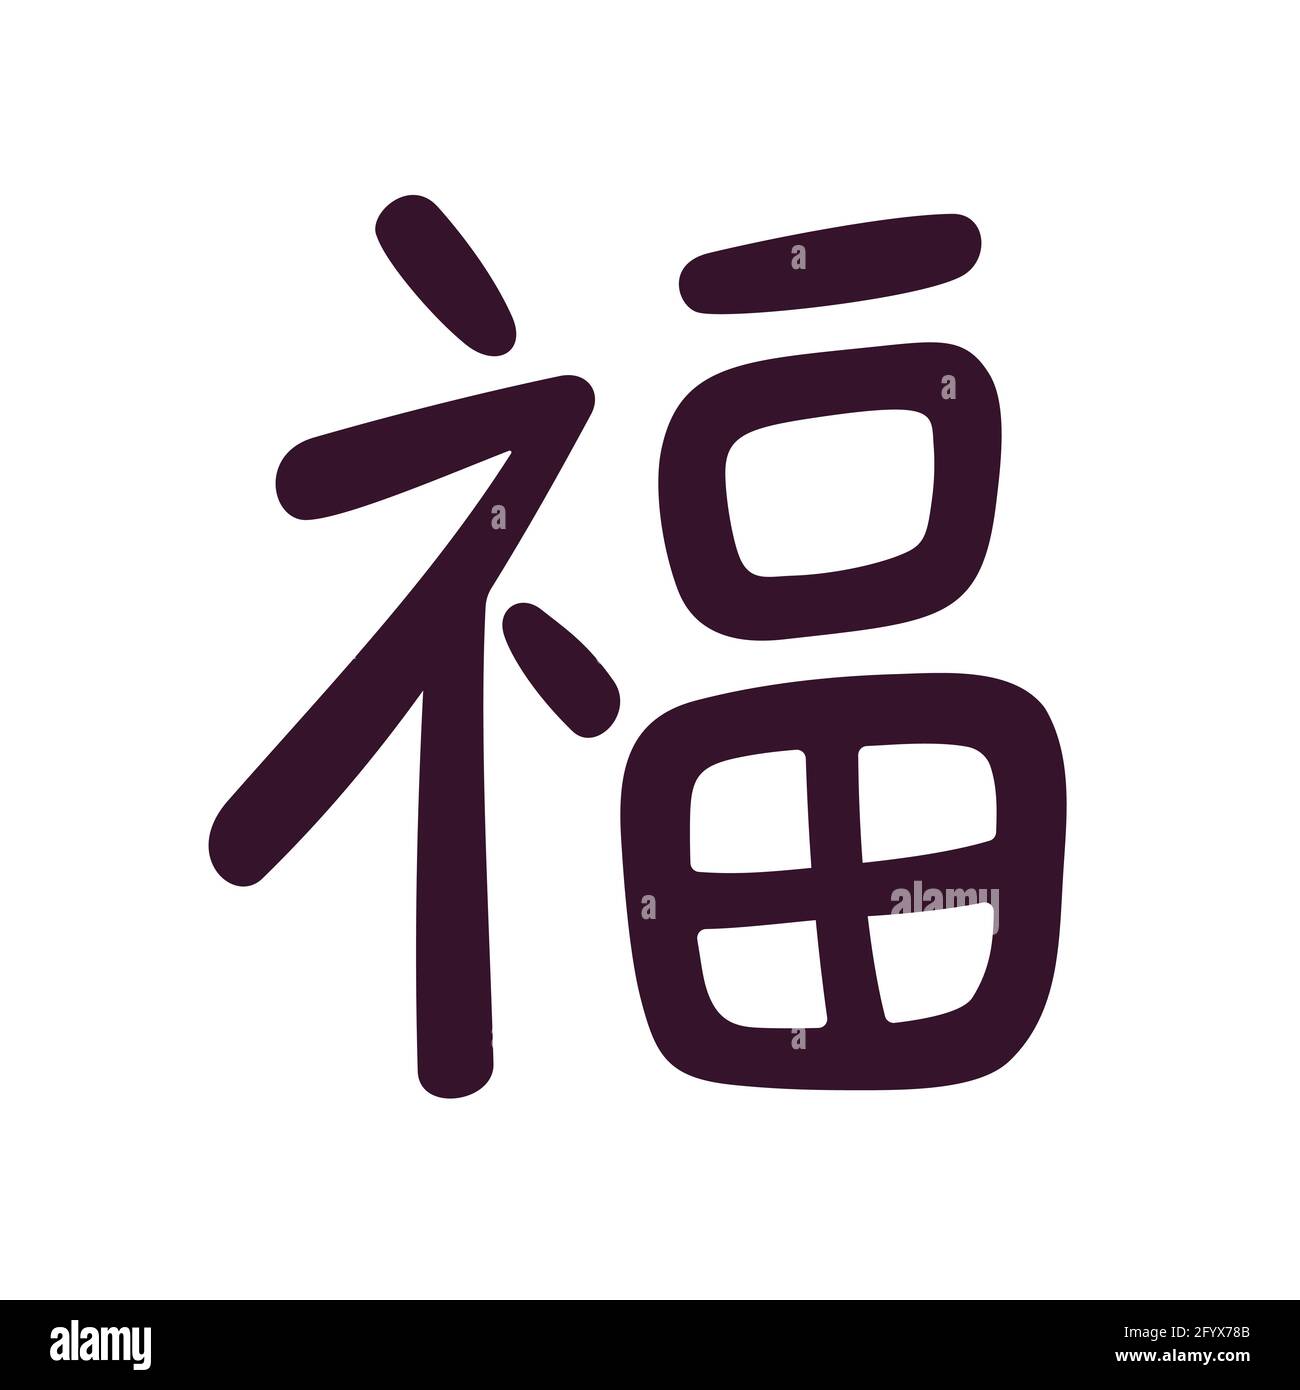 Le caractère chinois « Fu » signifie « fortune » ou « bonne chance ». Symbole d'écriture calligraphique de style moderne simple. Illustration de clip art vectoriel. Illustration de Vecteur